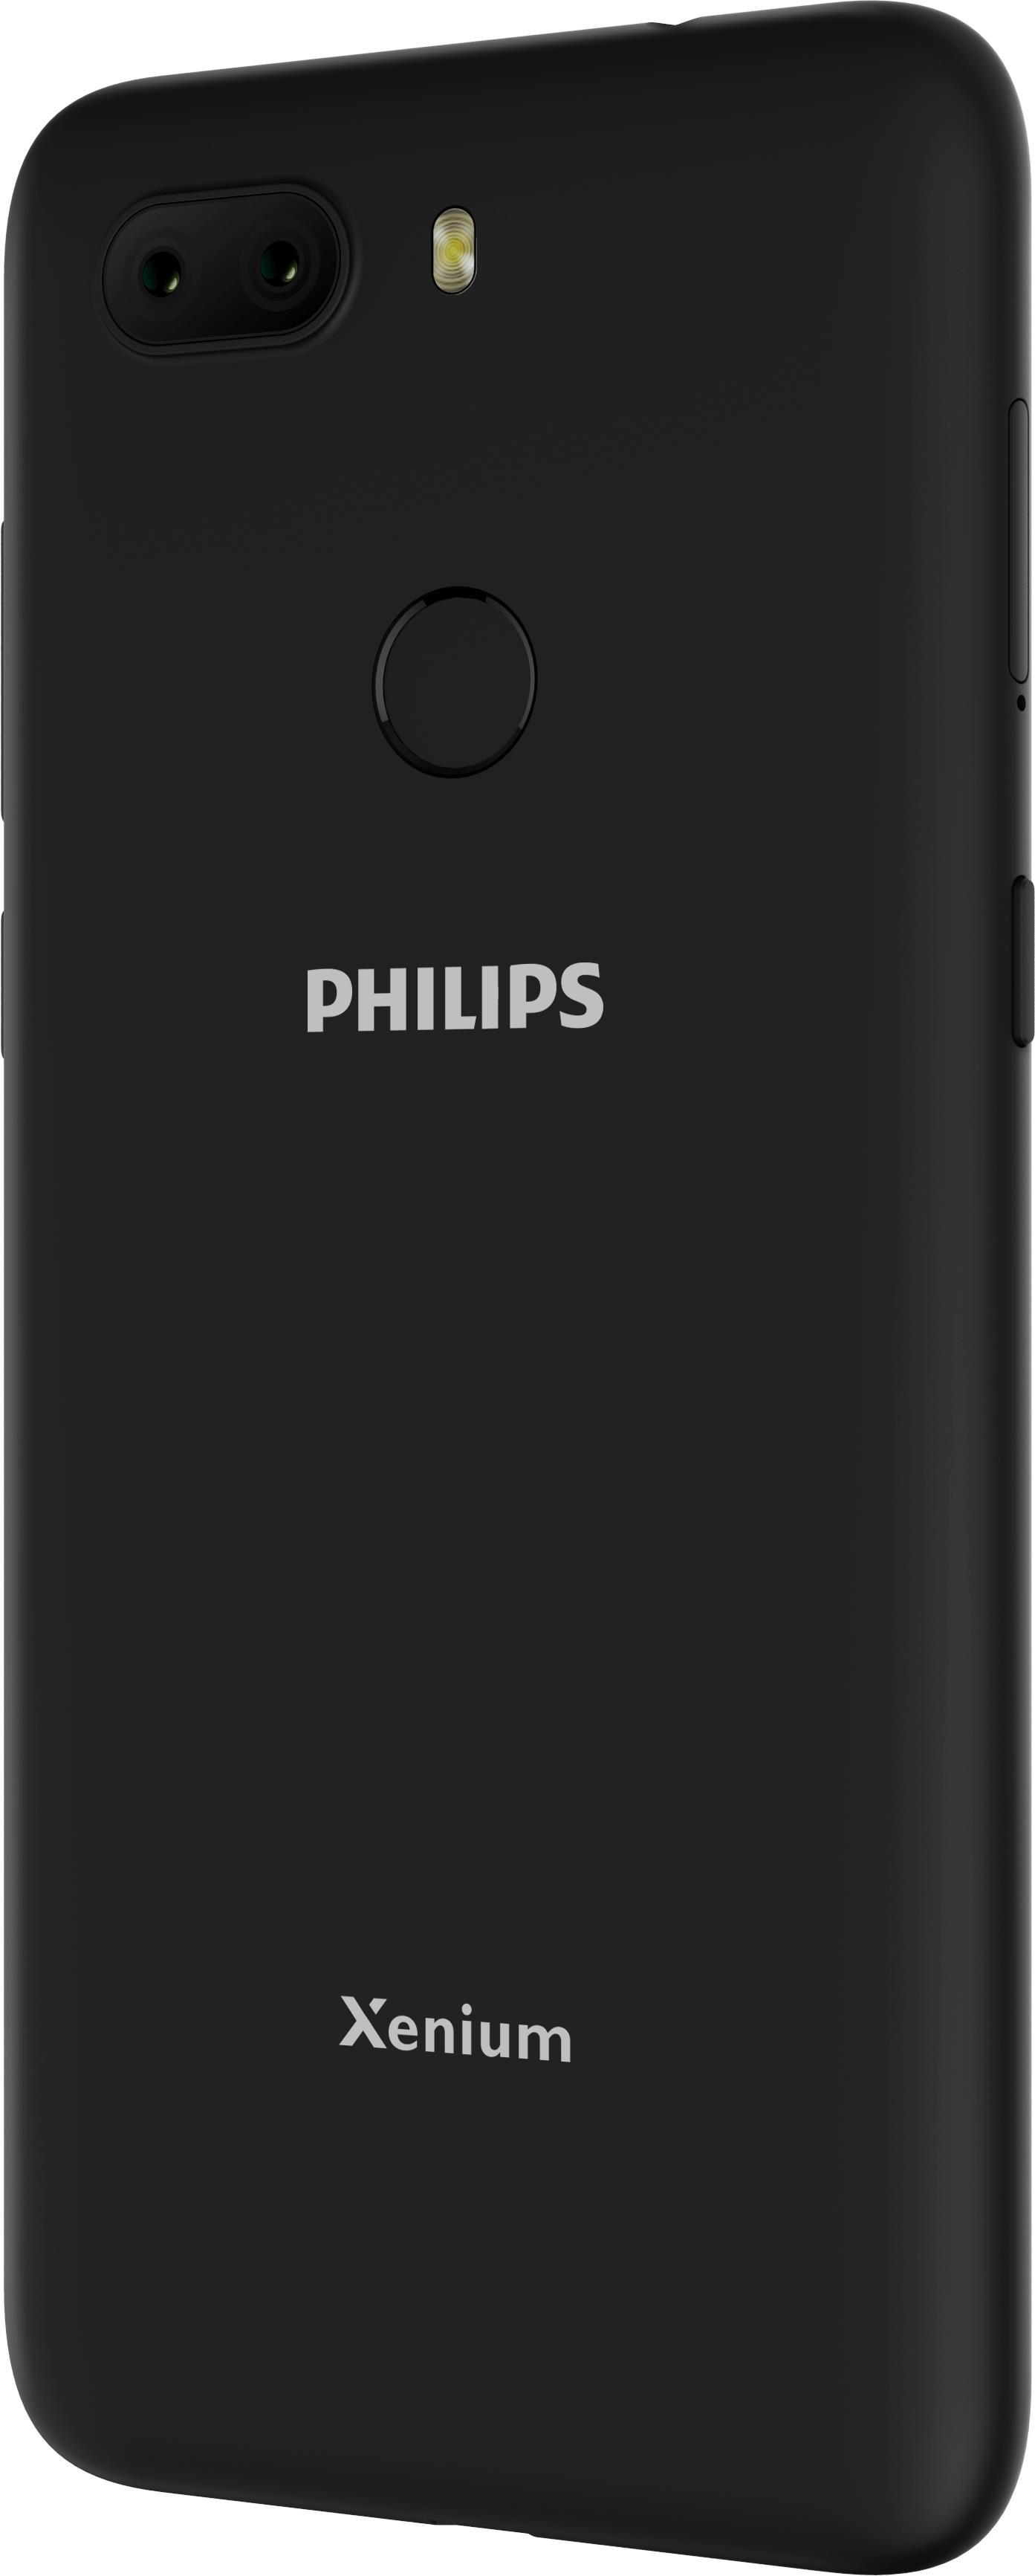 Philips Xenium S566